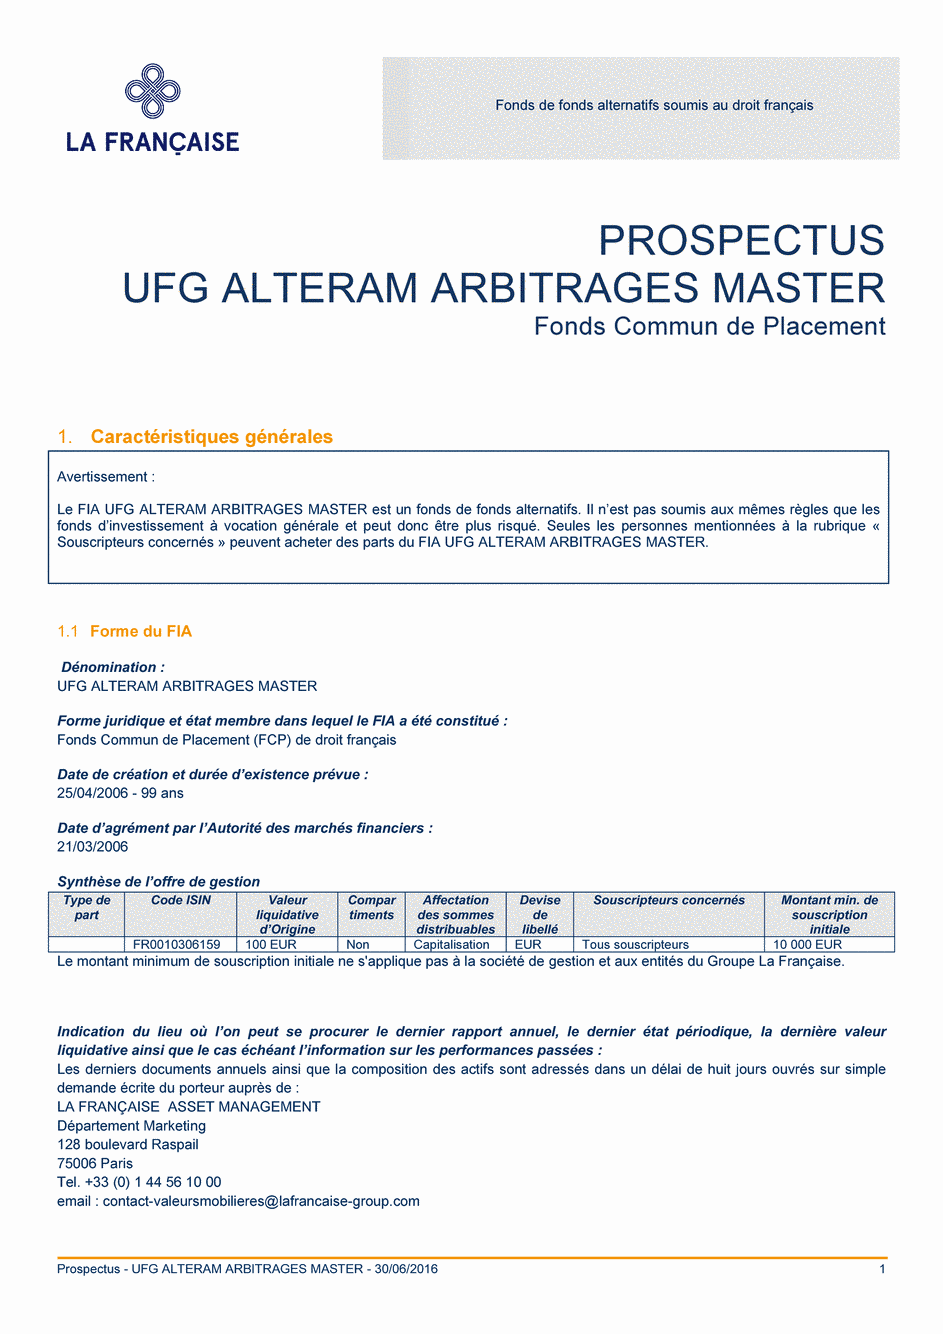 Prospectus UFG ALTERAM ARBITRAGES MASTER - 30/06/2016 - Français